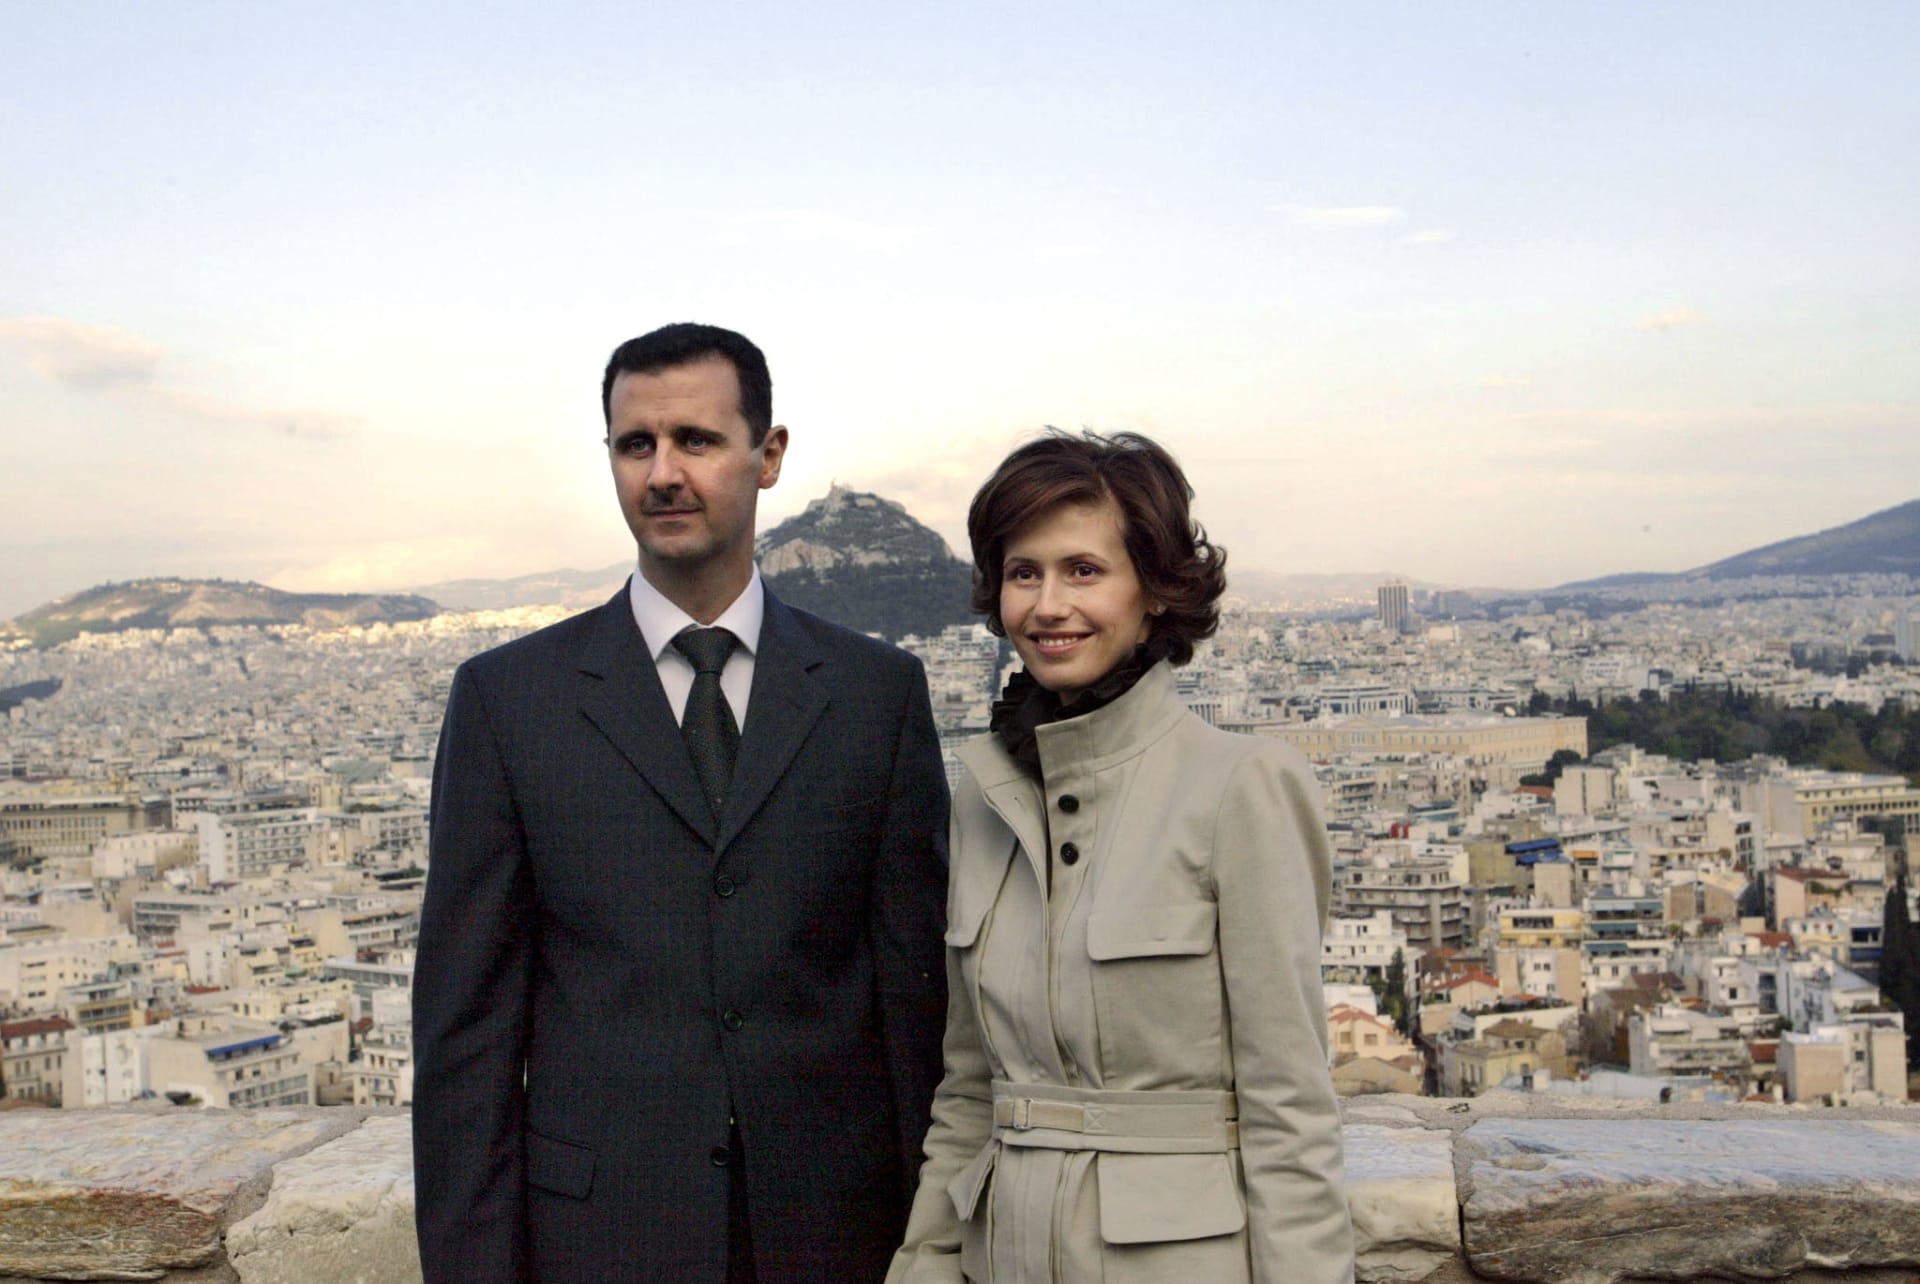 أسماء الأسد توجه رسالة بفيديو بعد إعلان إصابتها بسرطان اللوكيميا